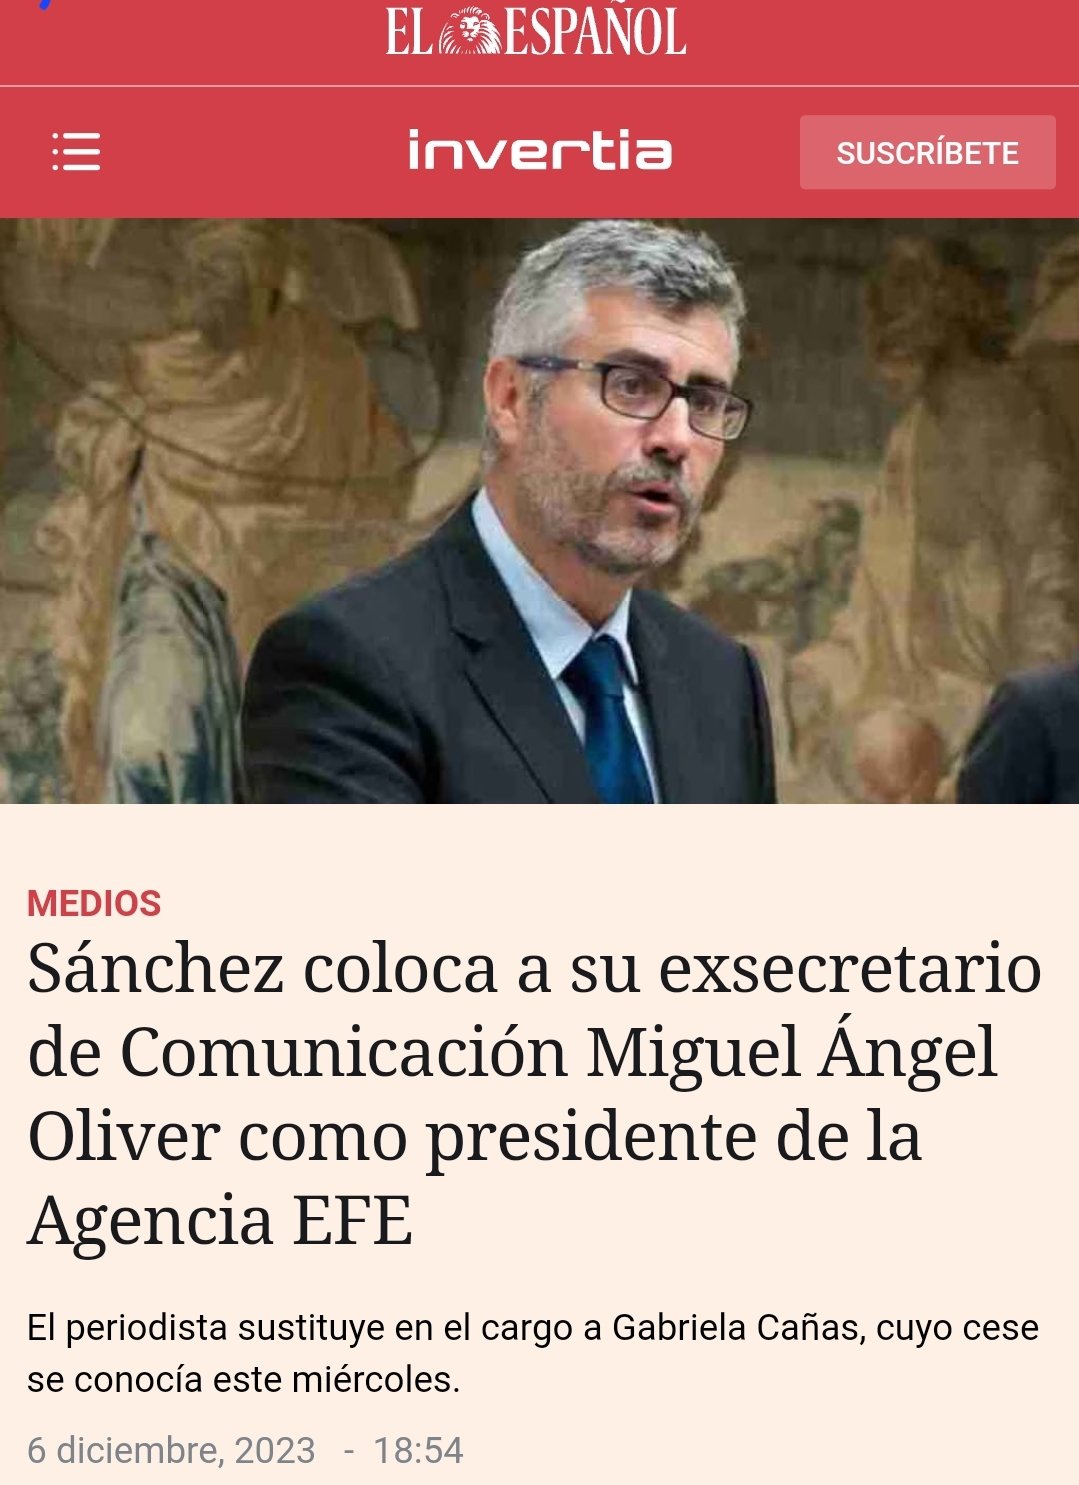 La colonización de la Agencia EFE es otra bajeza corrupta de Pedro Sánchez